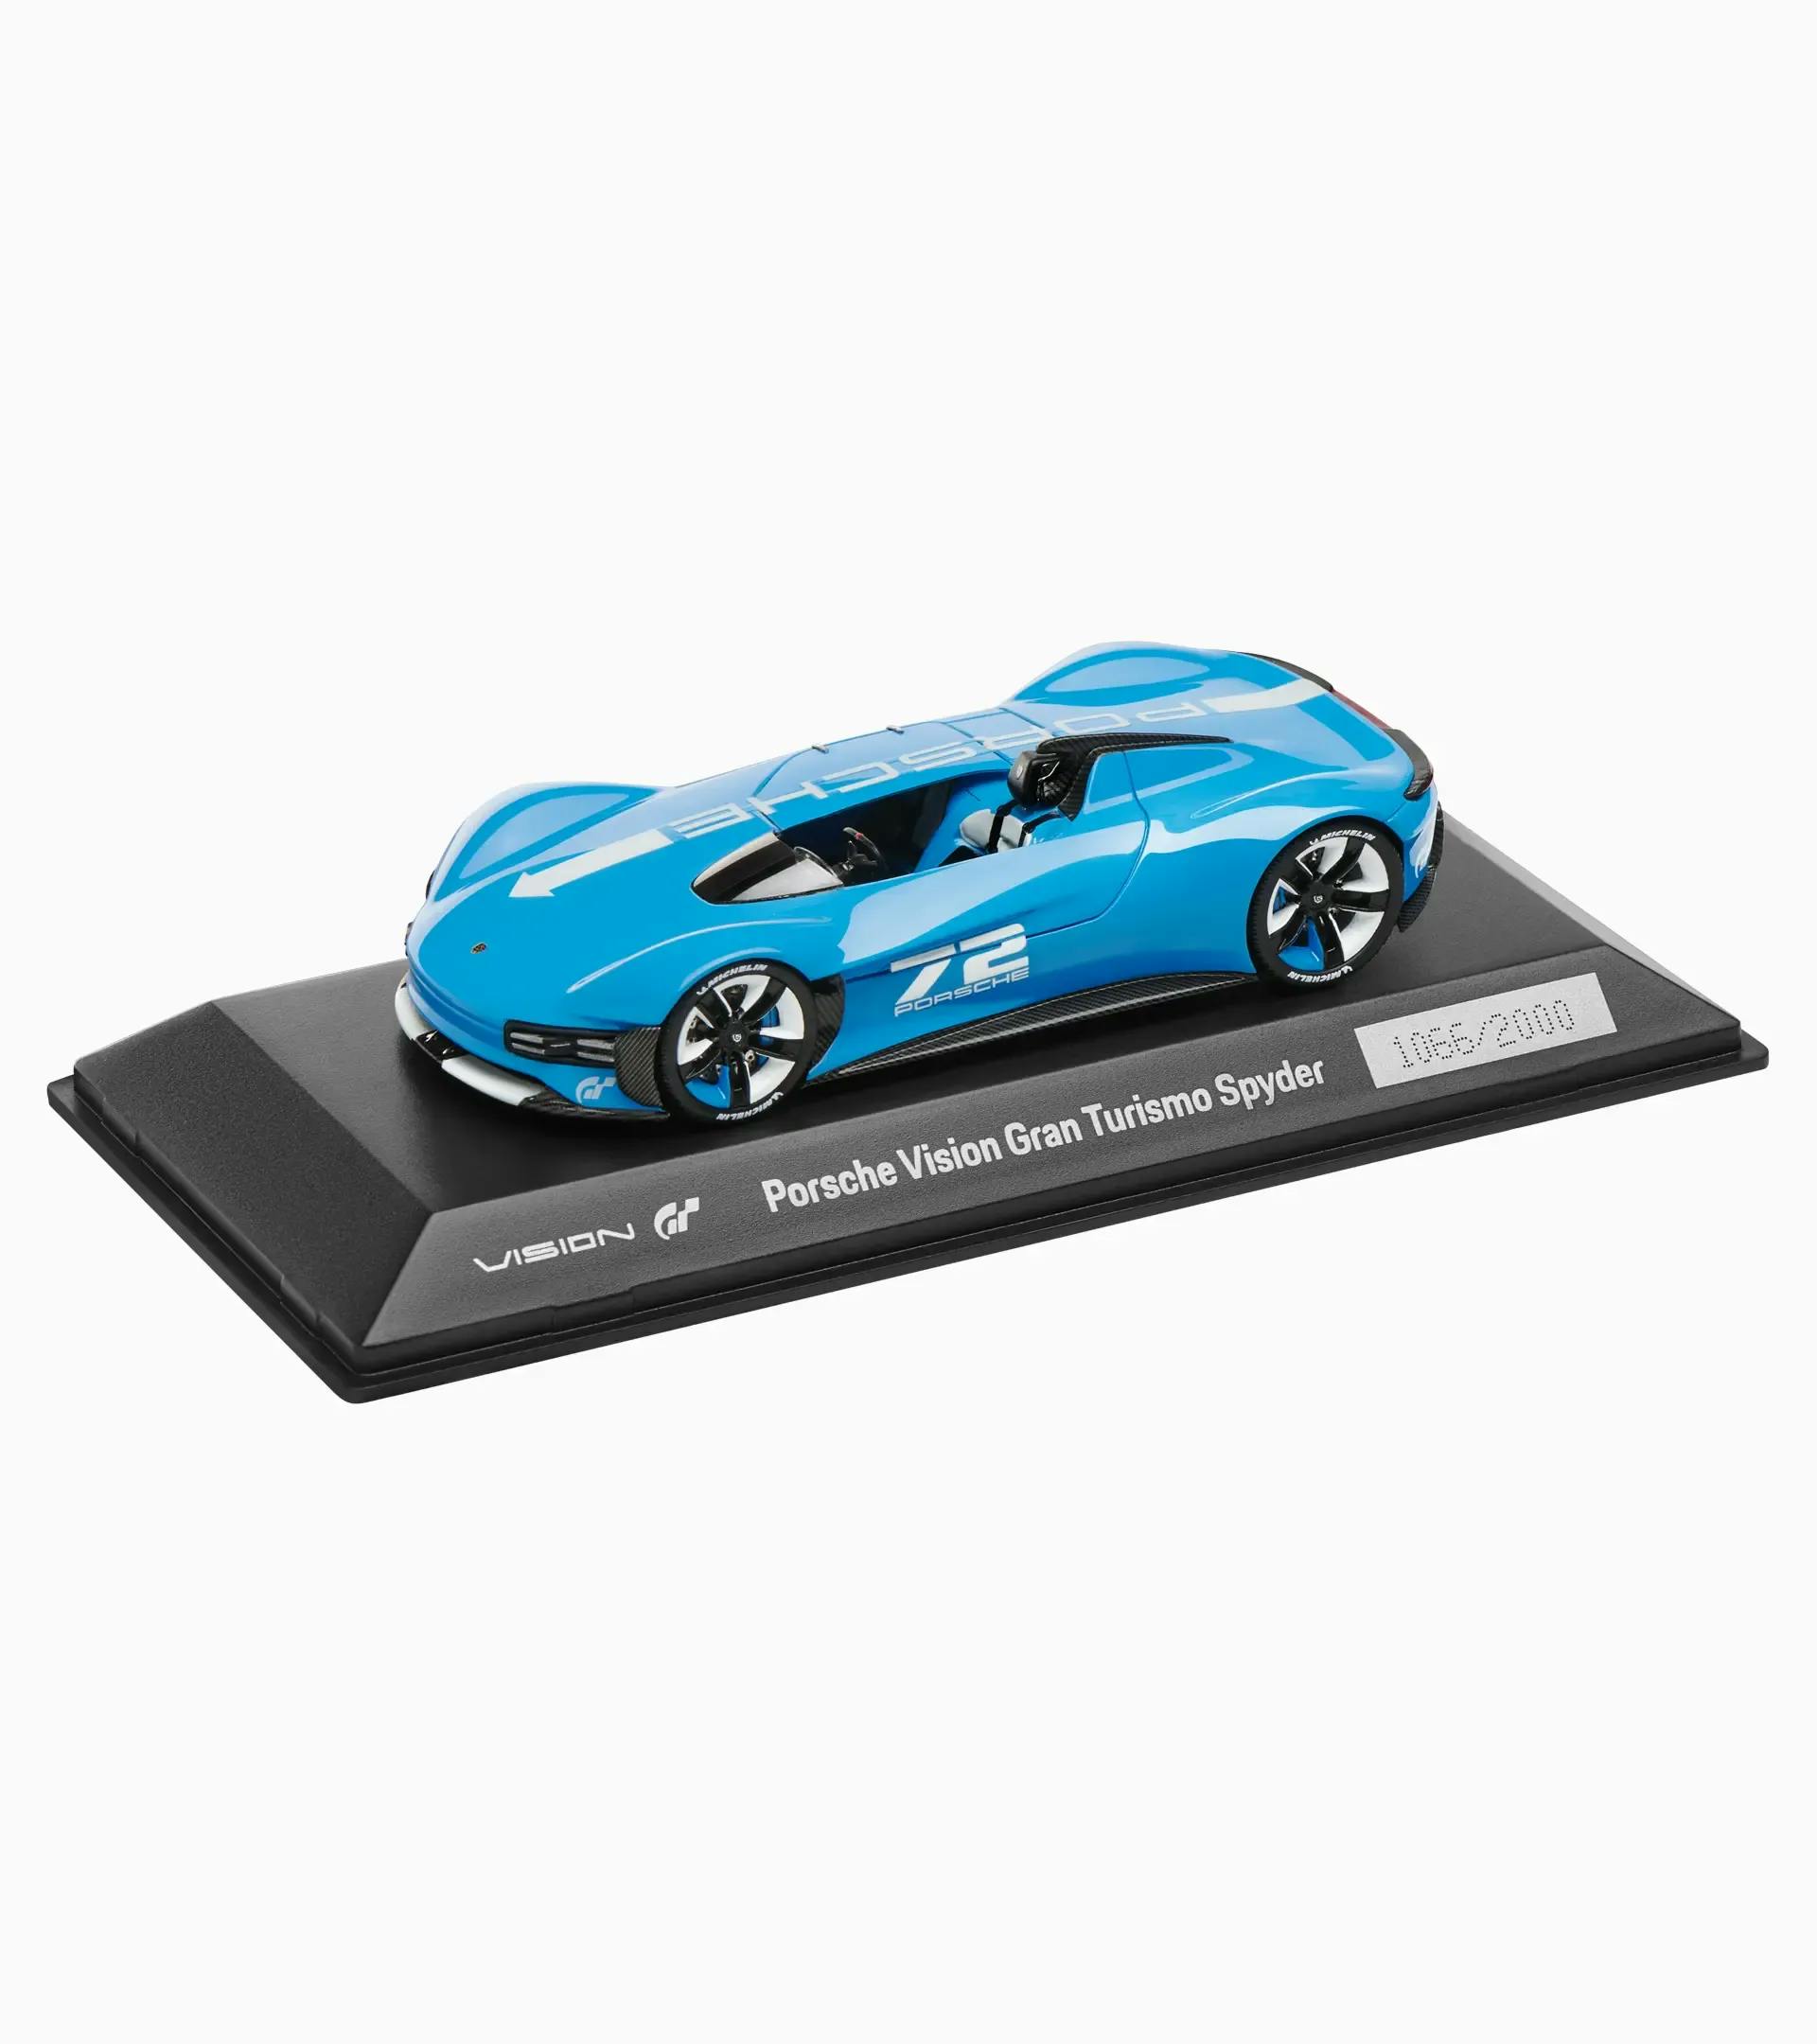 Porsche Vision Gran Turismo Spyder – Ltd. | PORSCHE SHOP